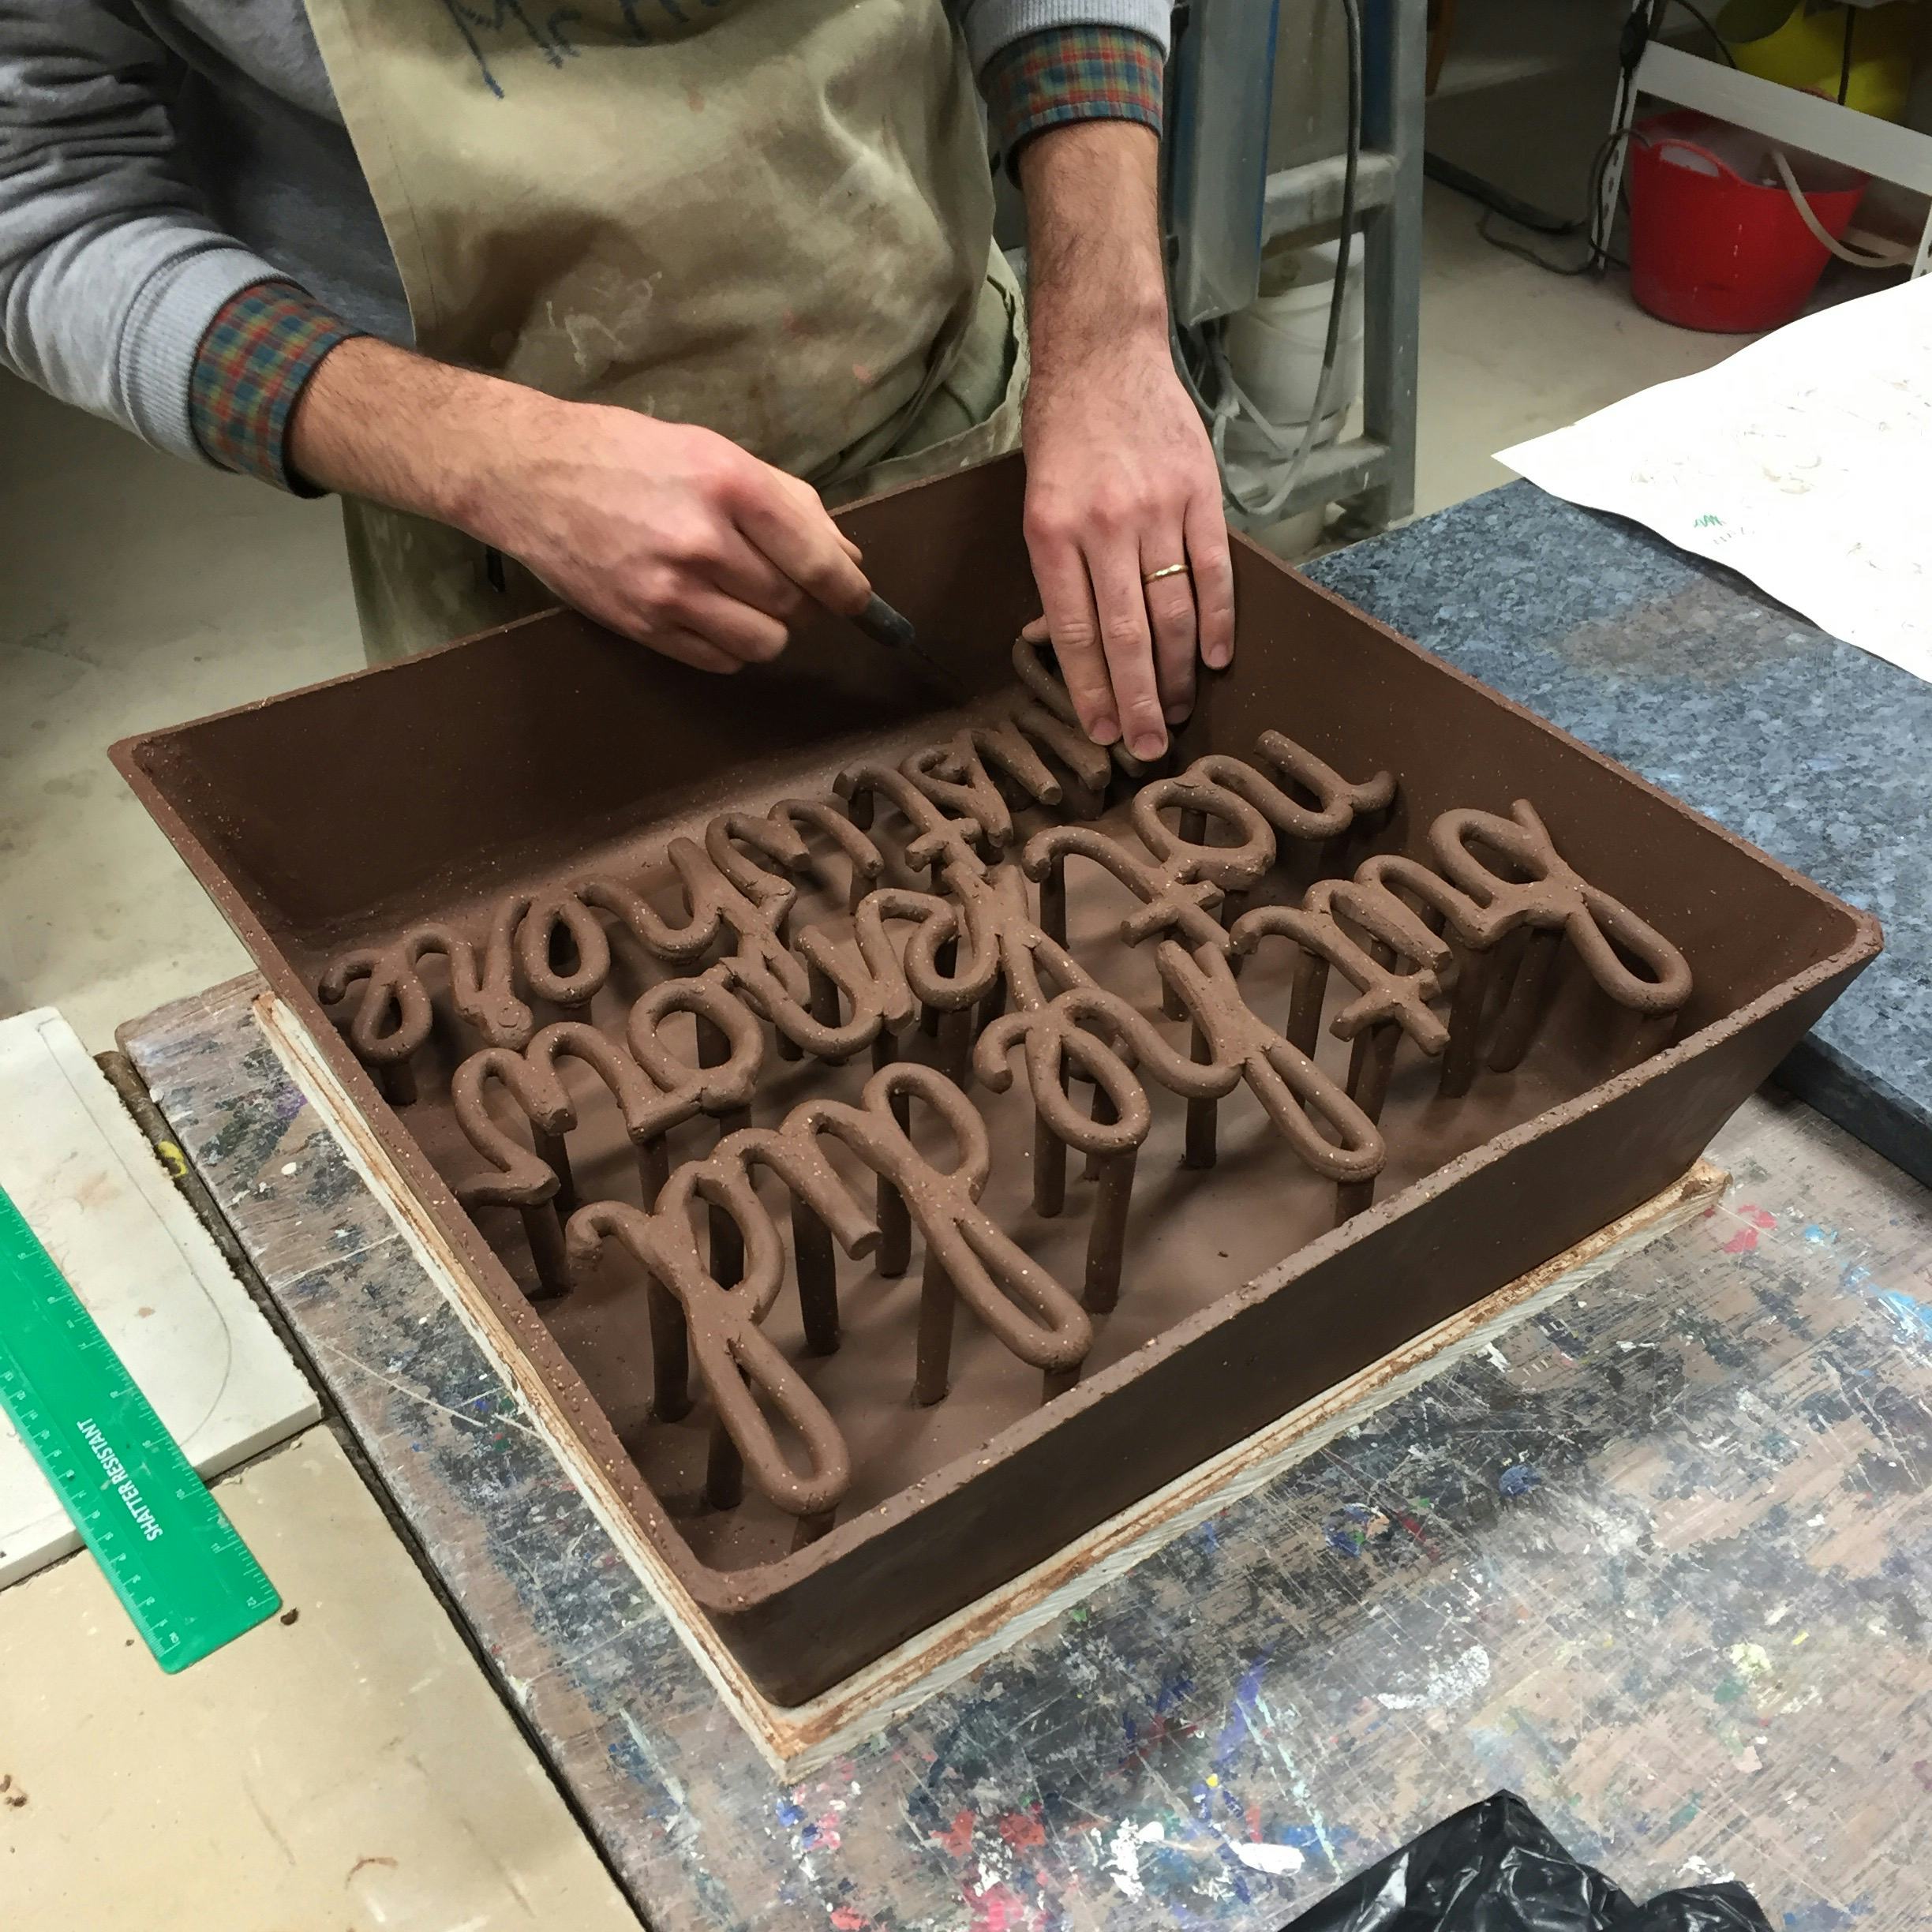 An artist’s hands making a ceramic artwork